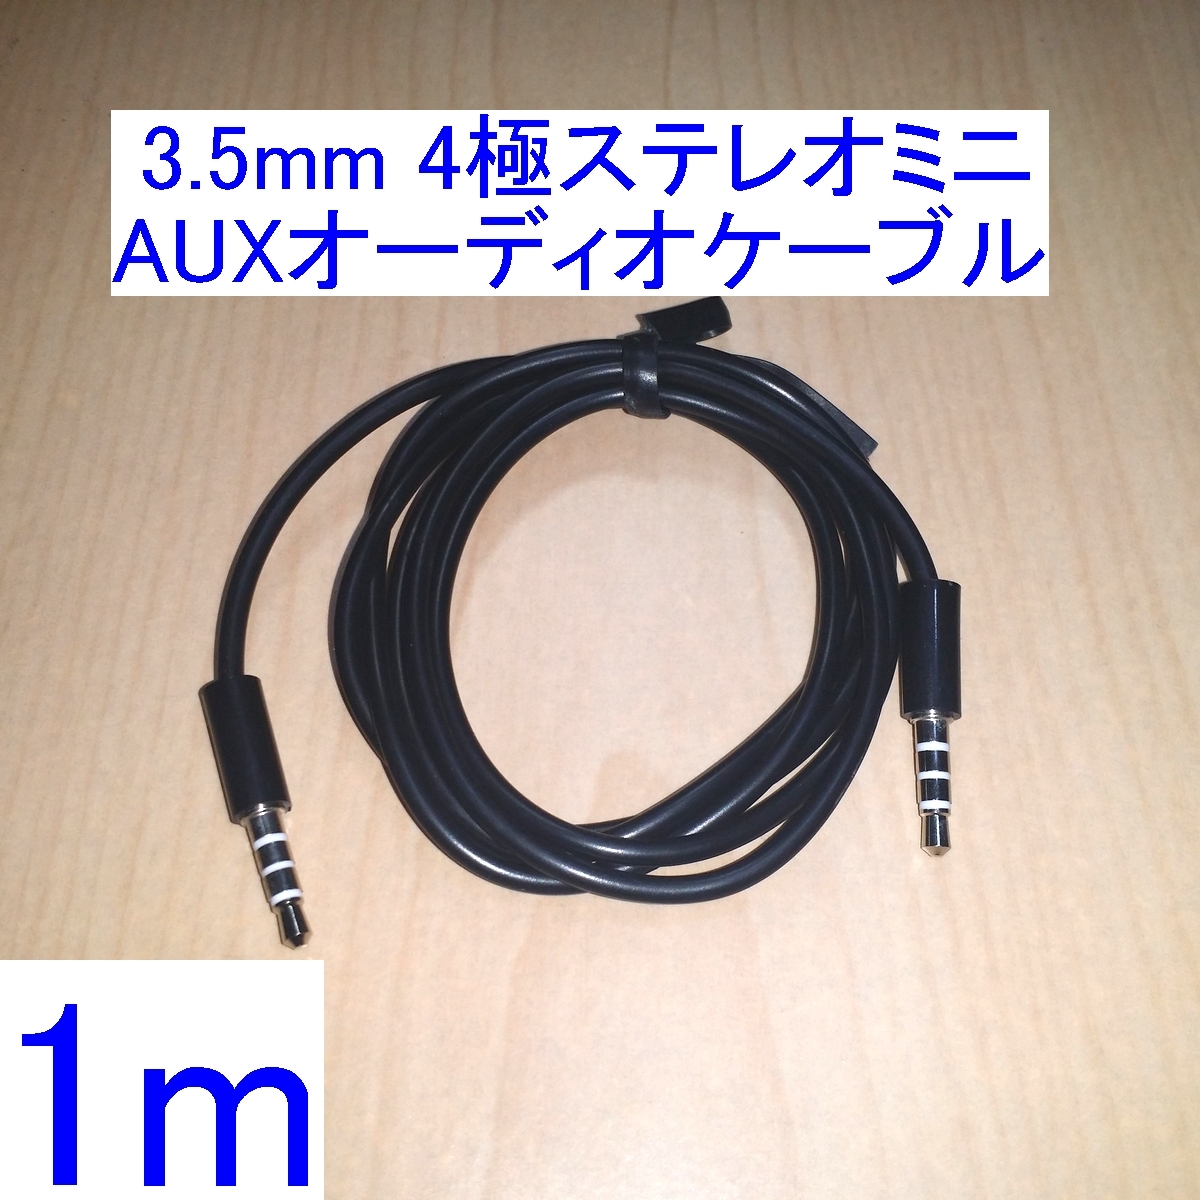 【送料込/即決】3.5mm 4極ステレオミニプラグ AUX オーディオケーブル/コード 1m 両端オス 新品 ヘッドセットに _画像1